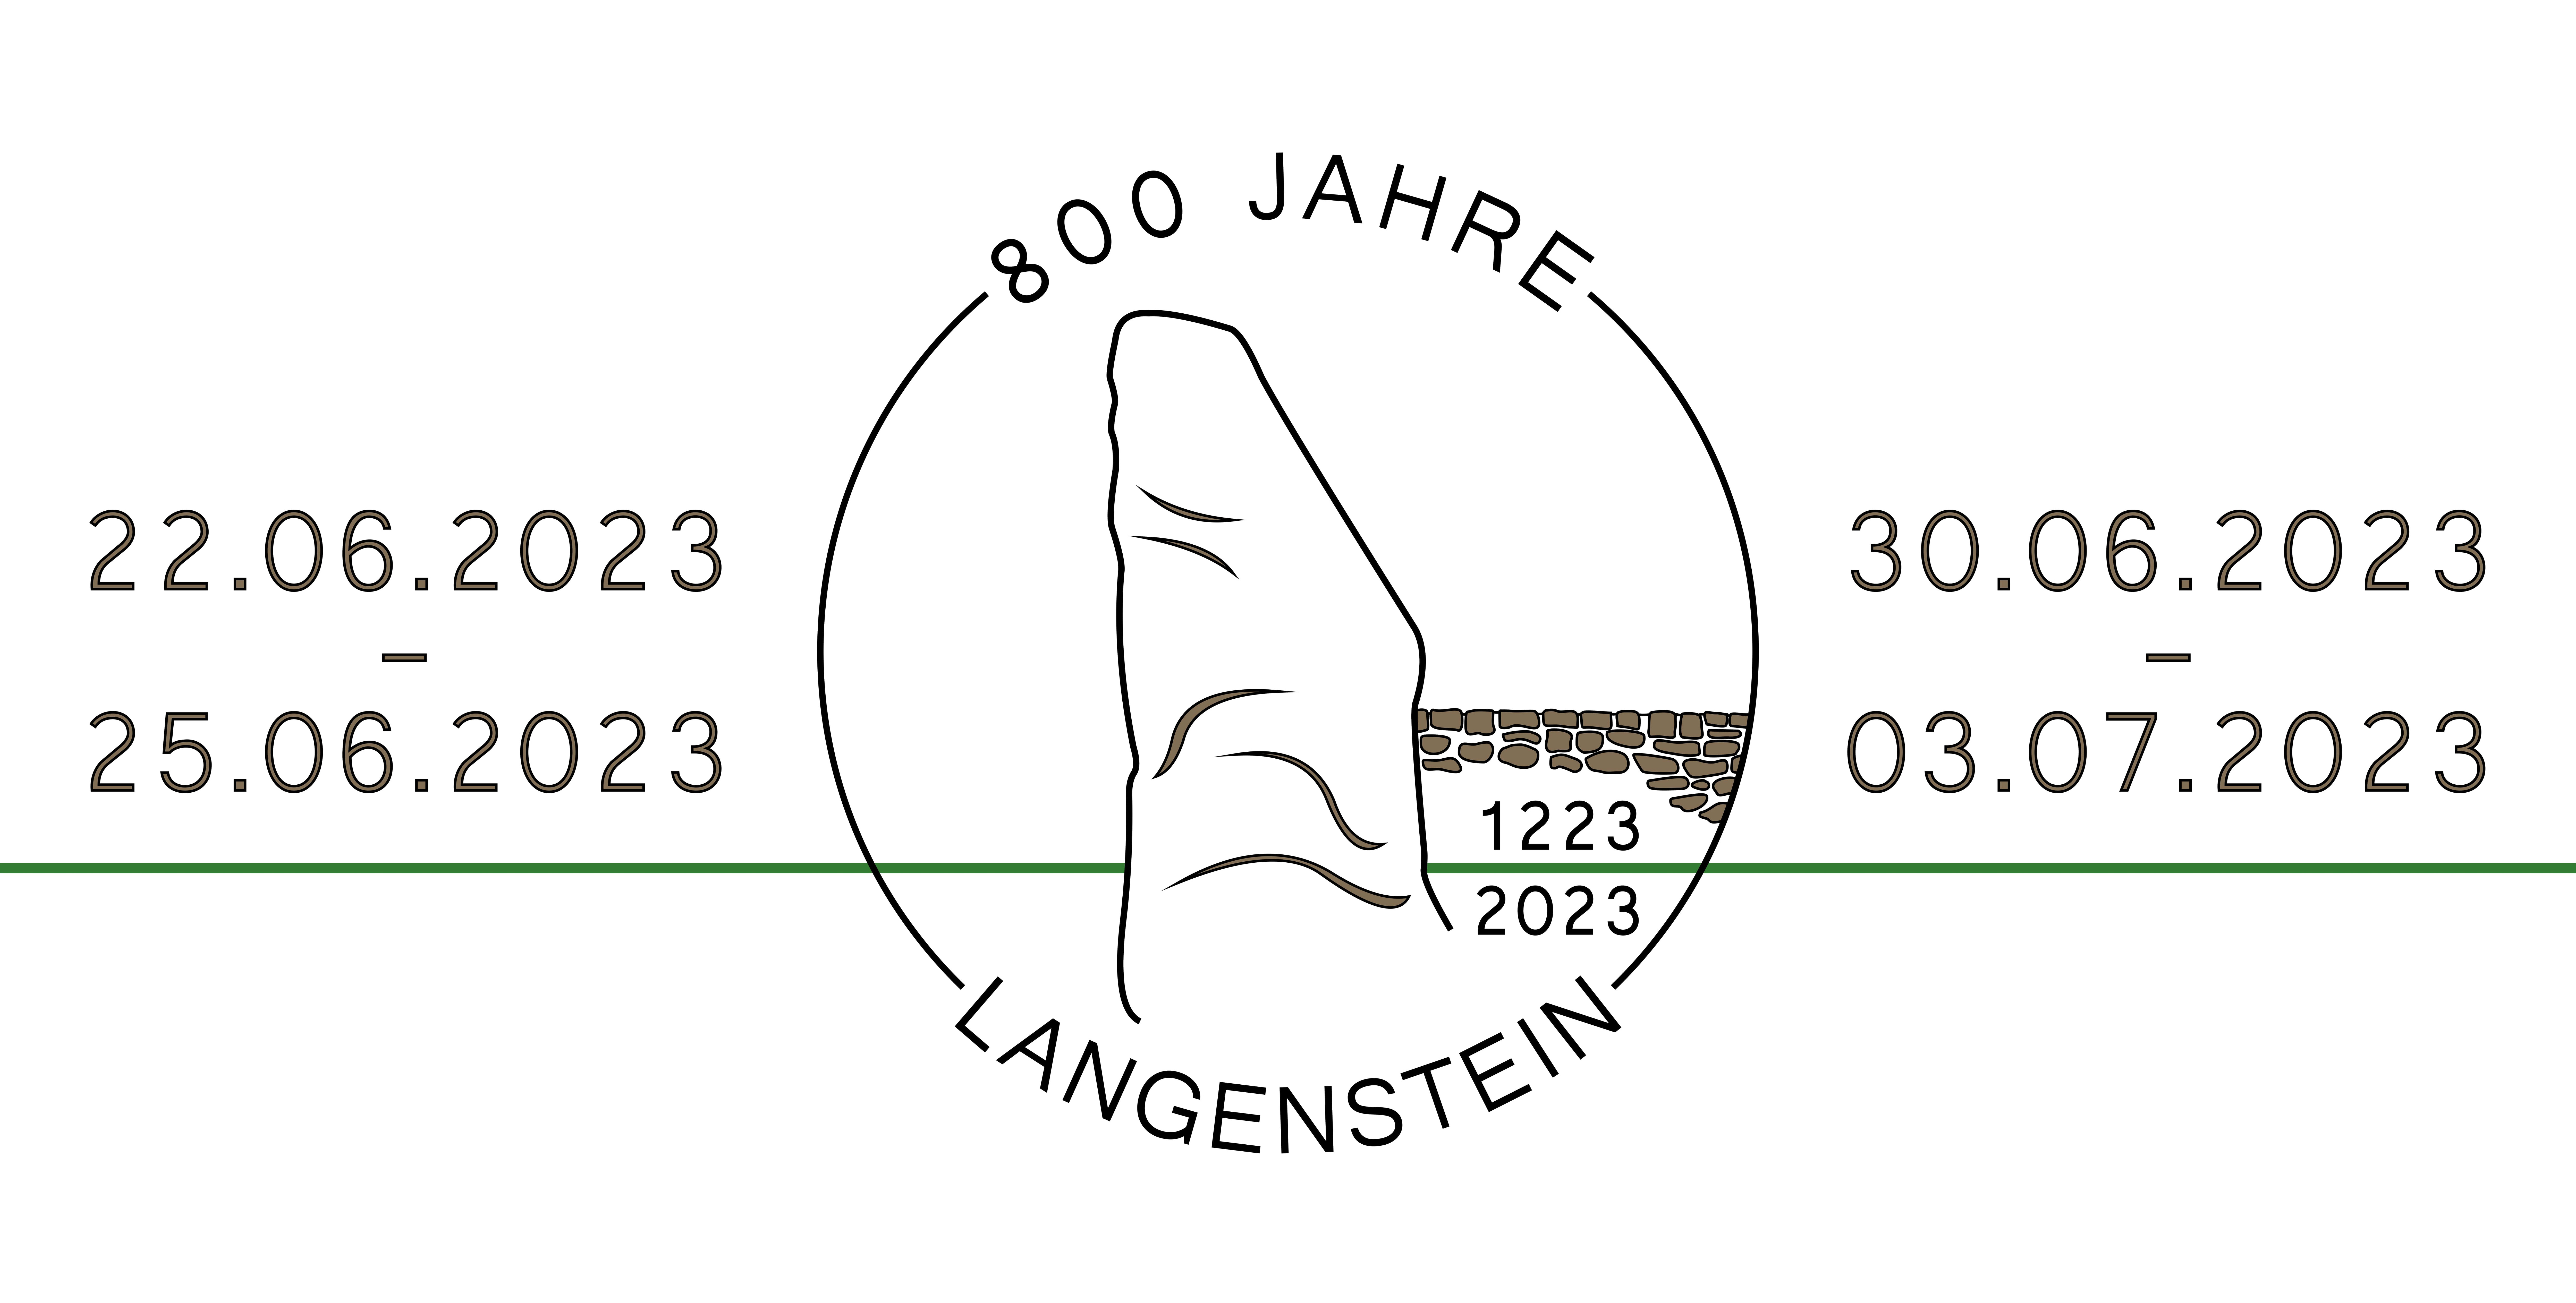 800 Jahre Langenstein min